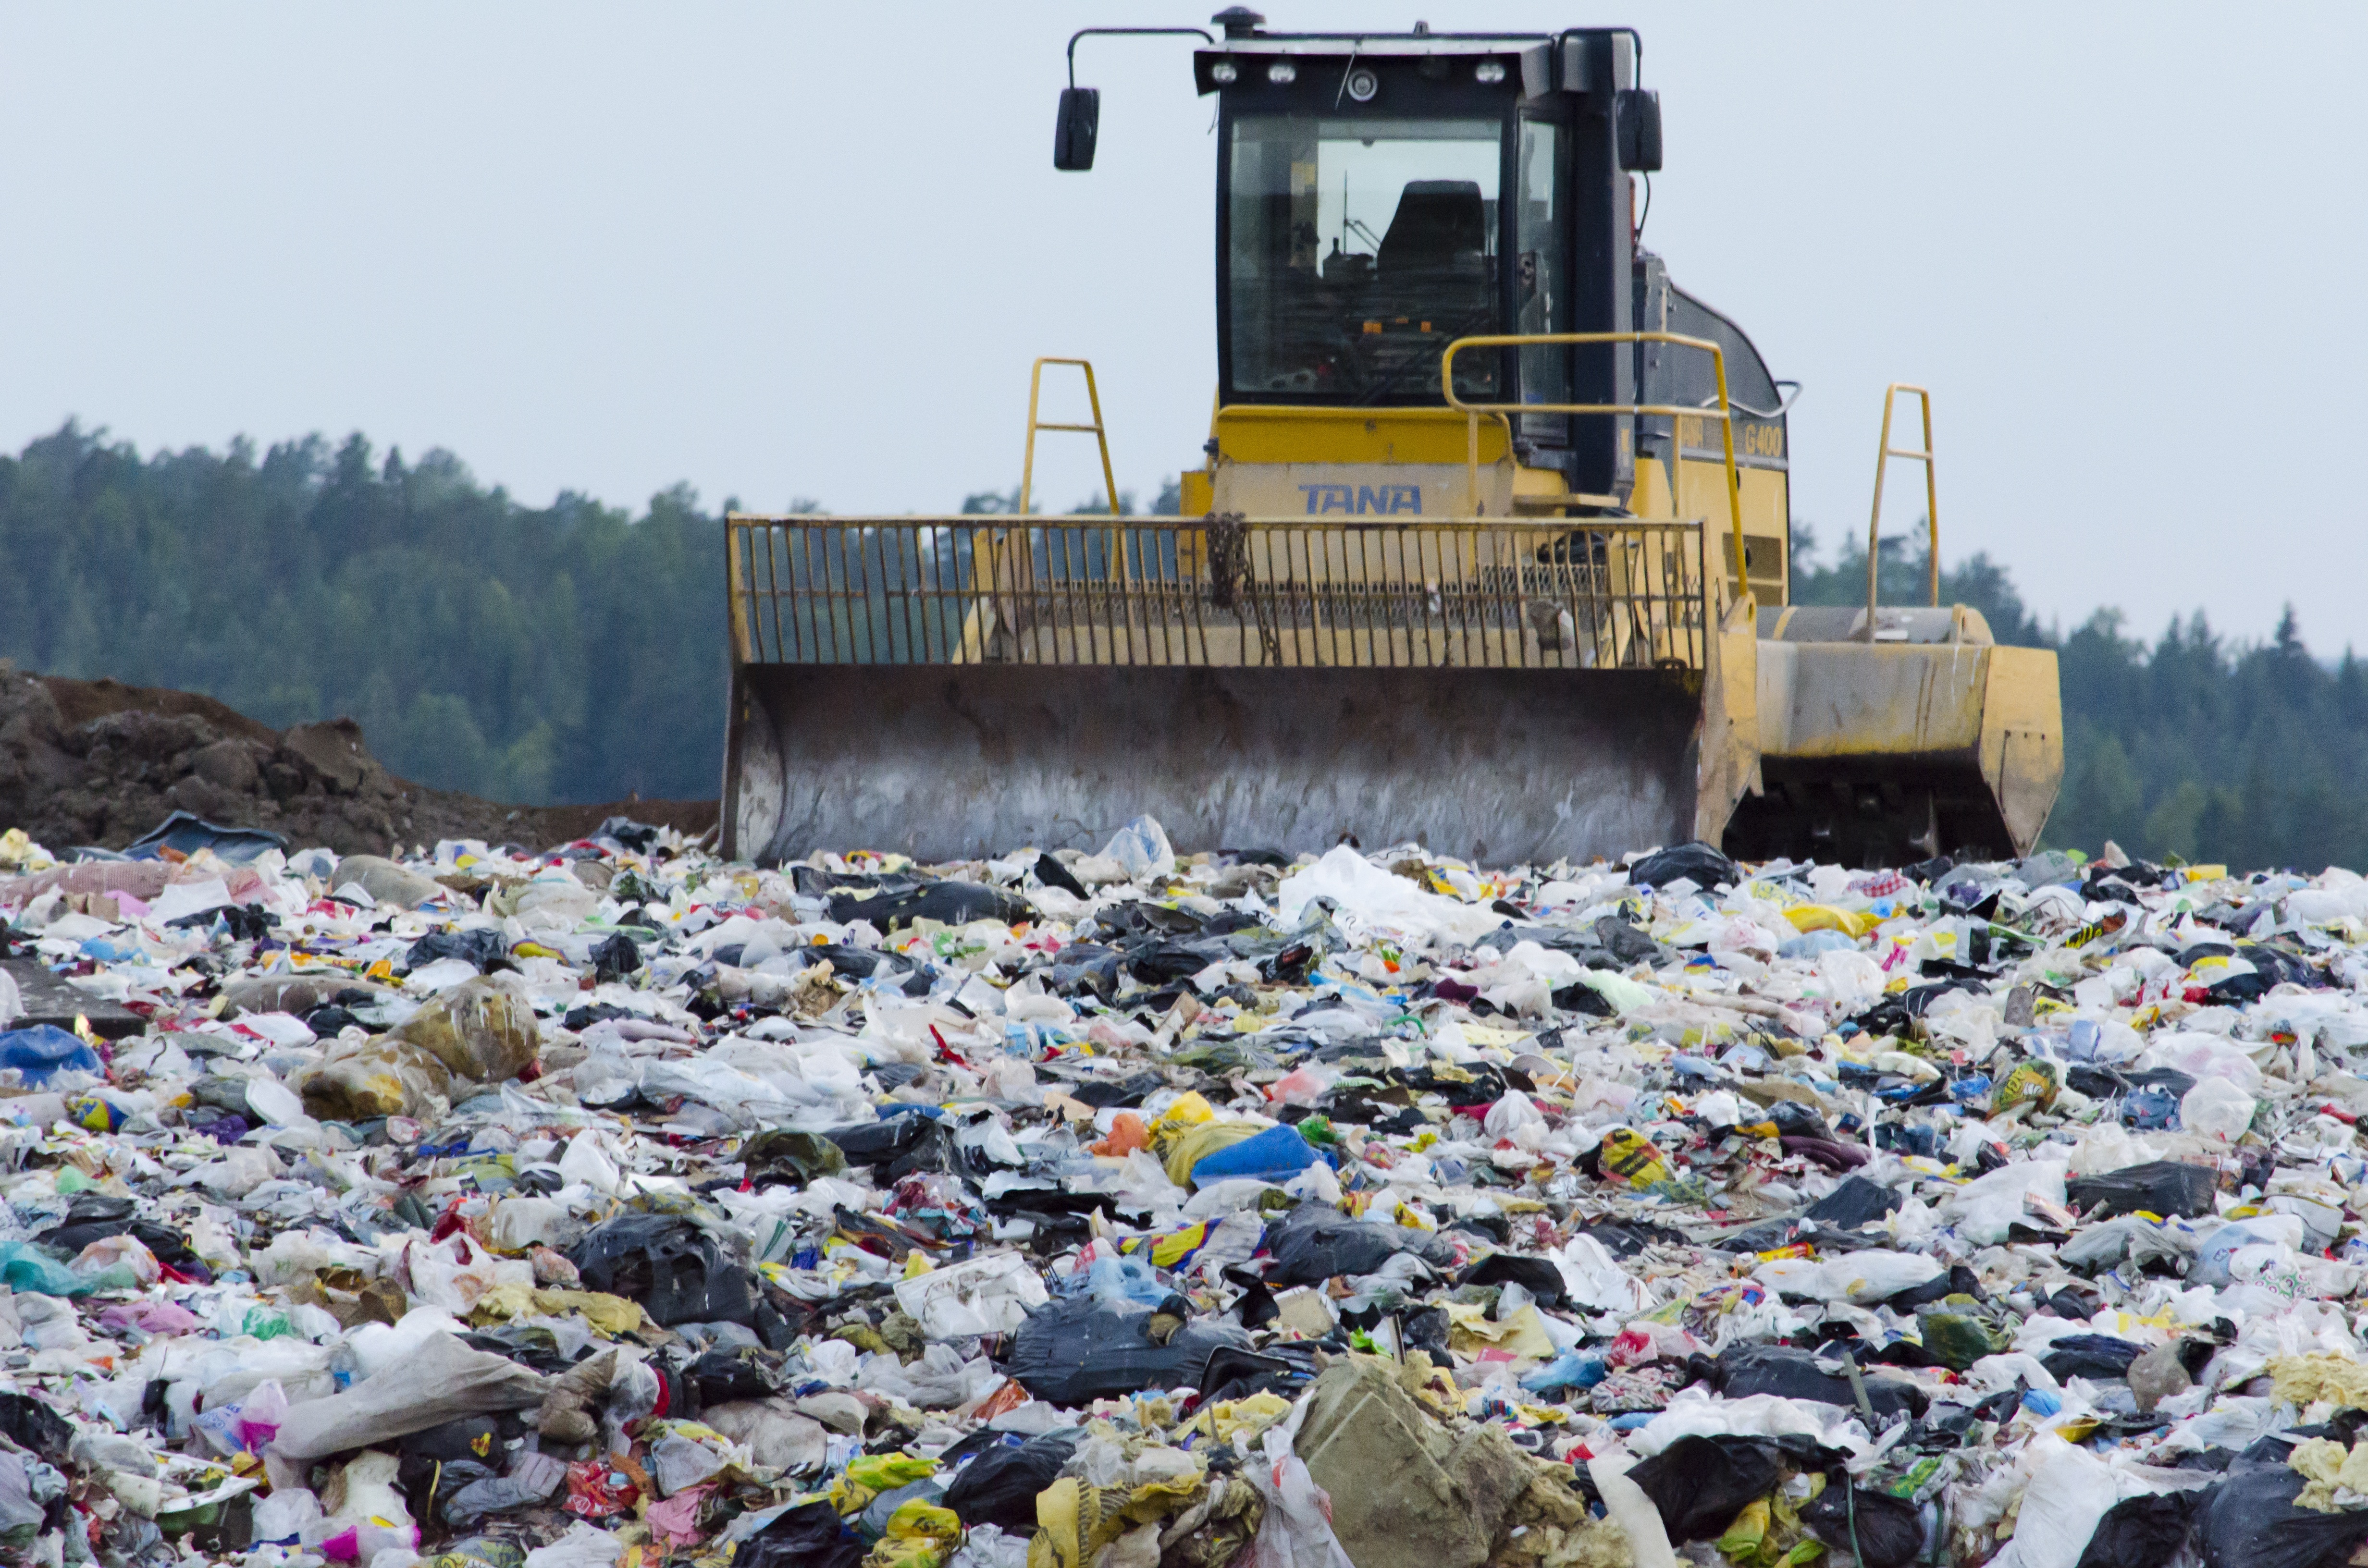 РЭО: Краснодарским властям не удалось доработать концепцию мусорной реформы